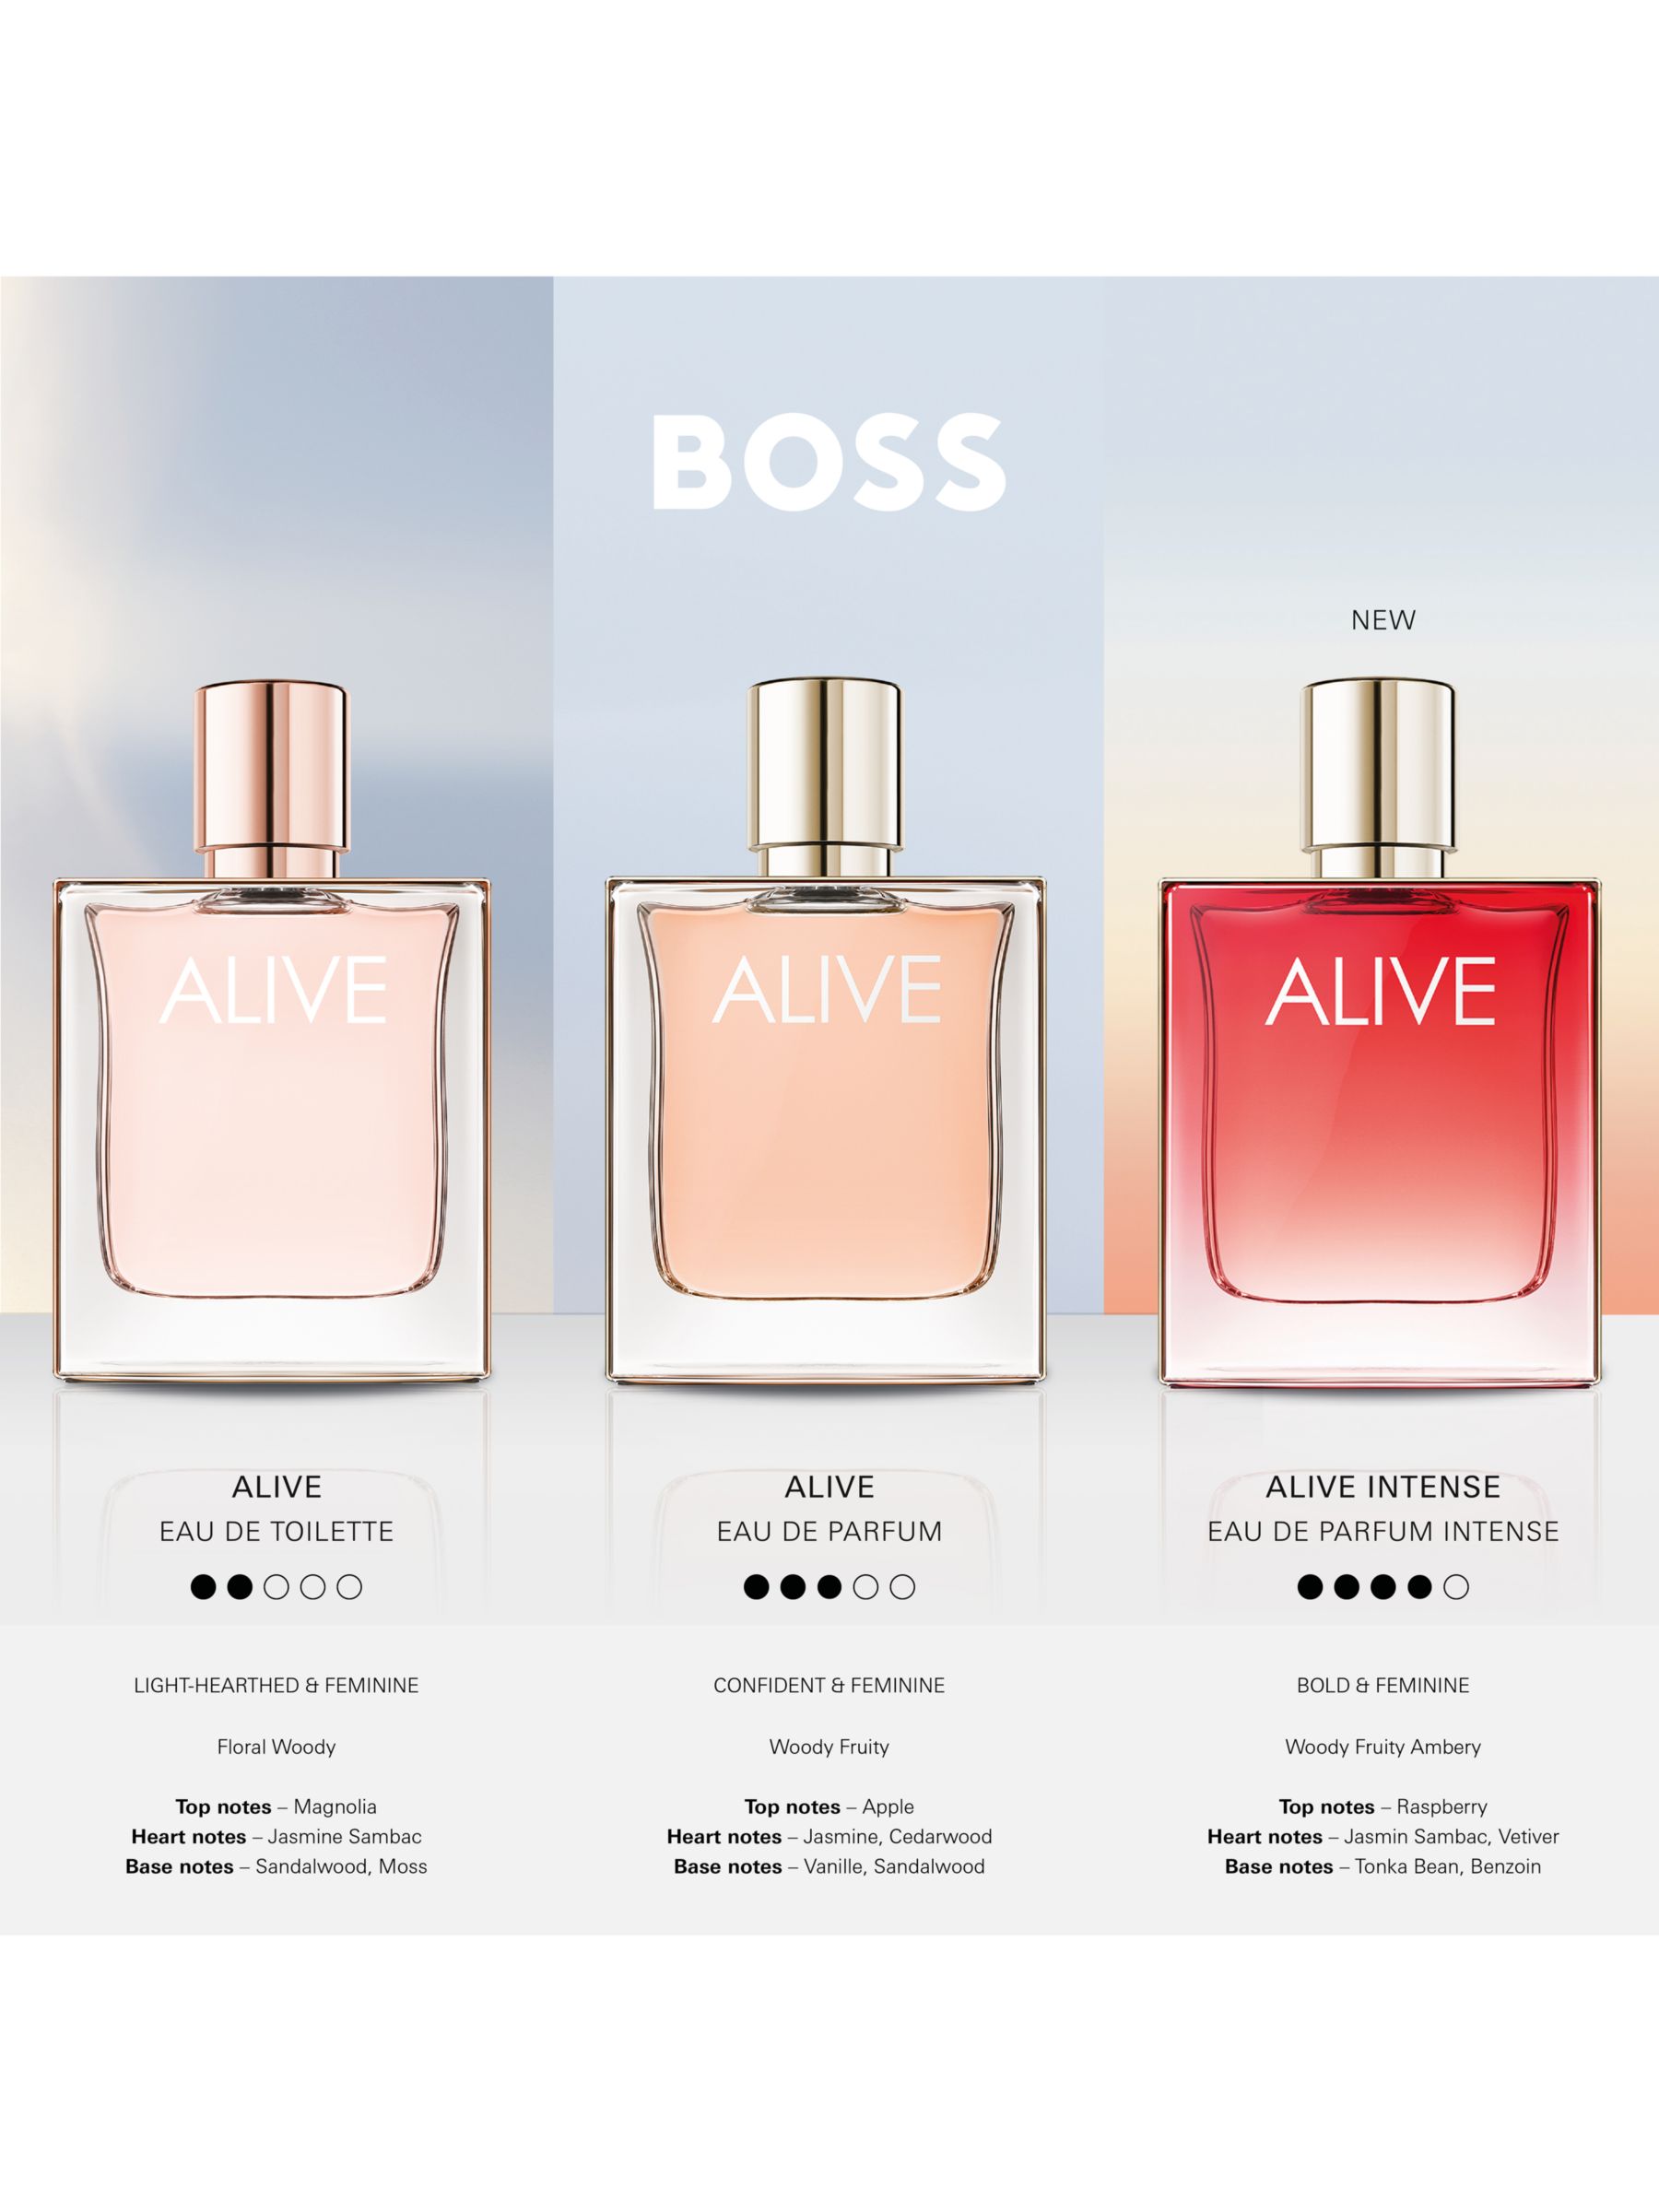 HUGO BOSS BOSS Alive Intense Eau de Parfum, 30ml 5